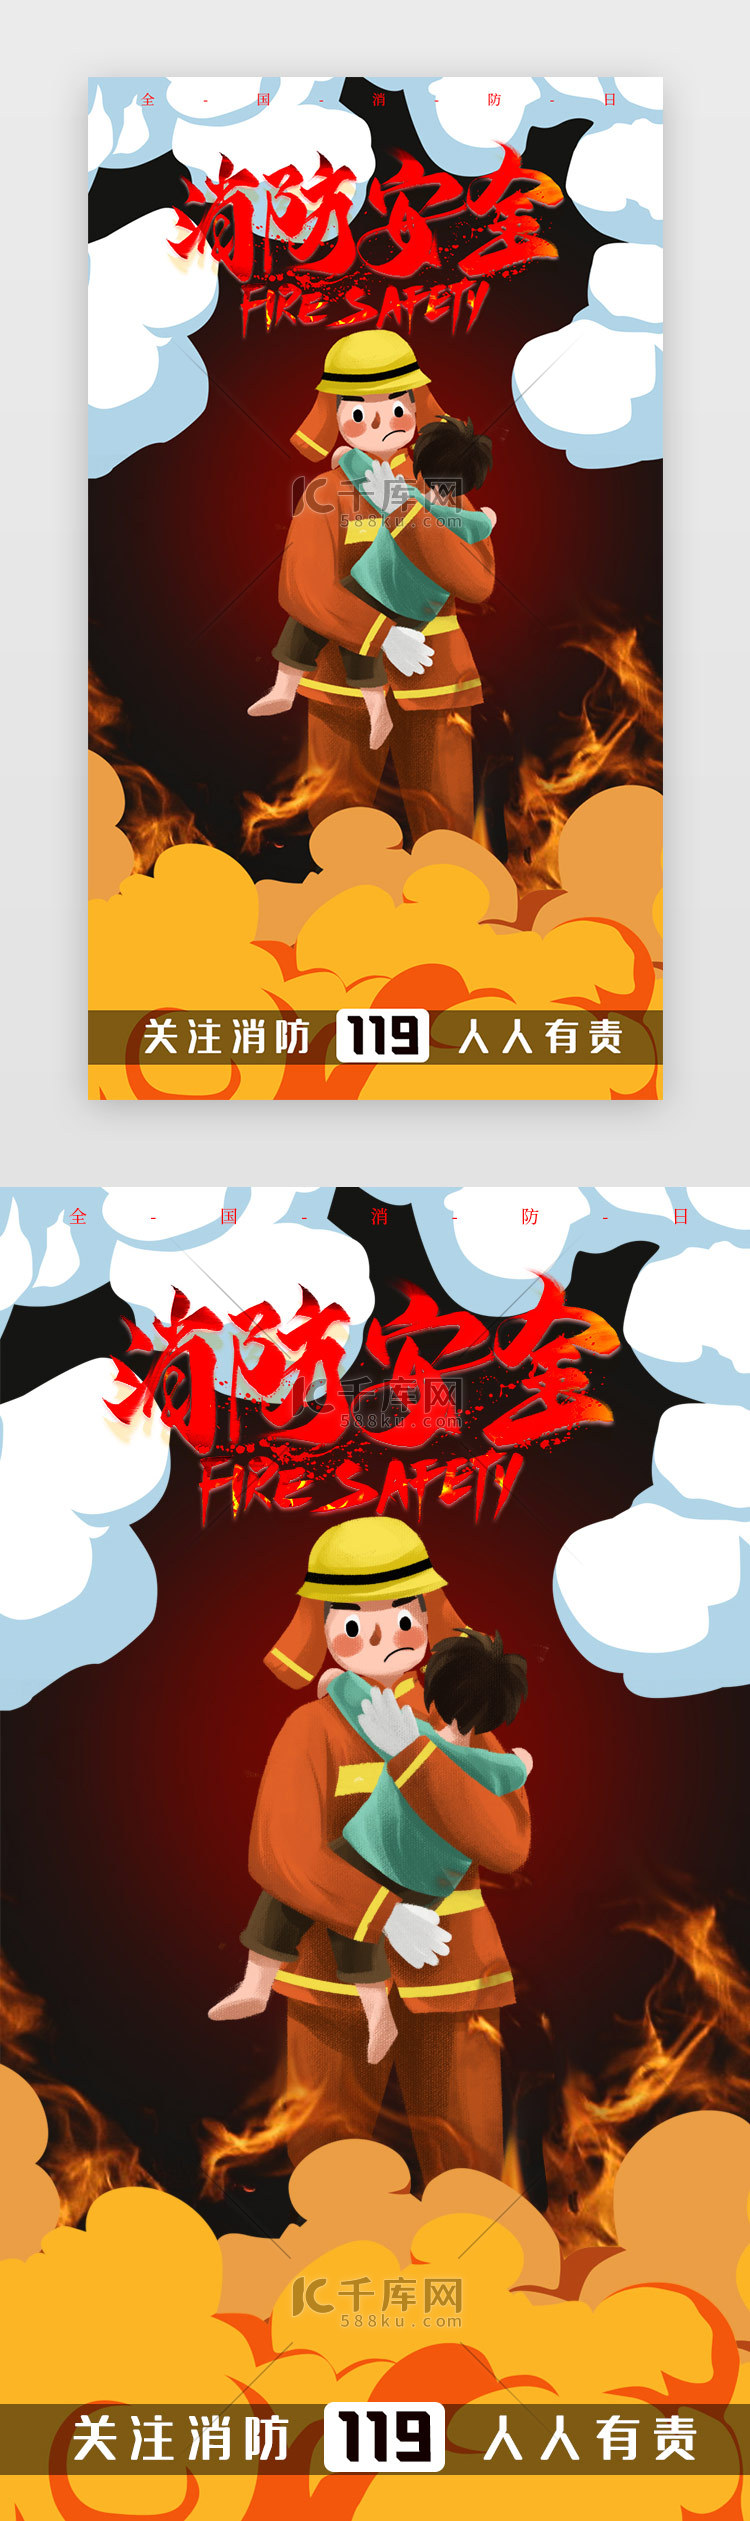 卡通全国消防日119宣传app闪屏海报